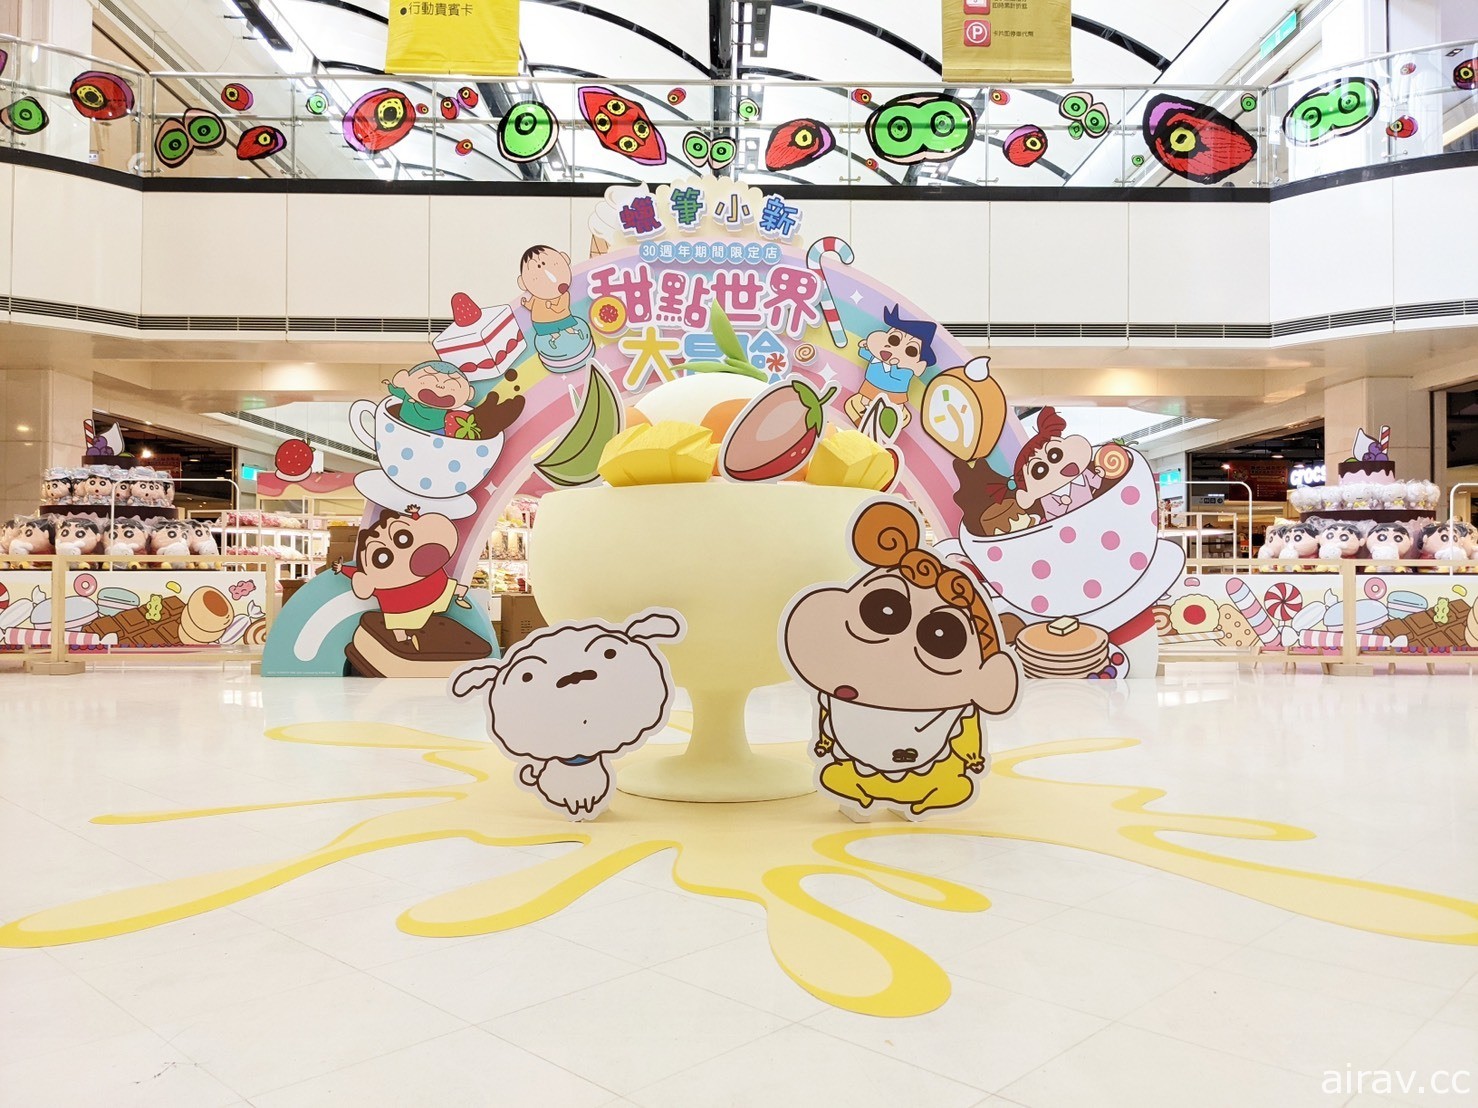 蠟筆小新 30 周年期間限定商店「甜點世界大冒險」台南場今日正式開幕